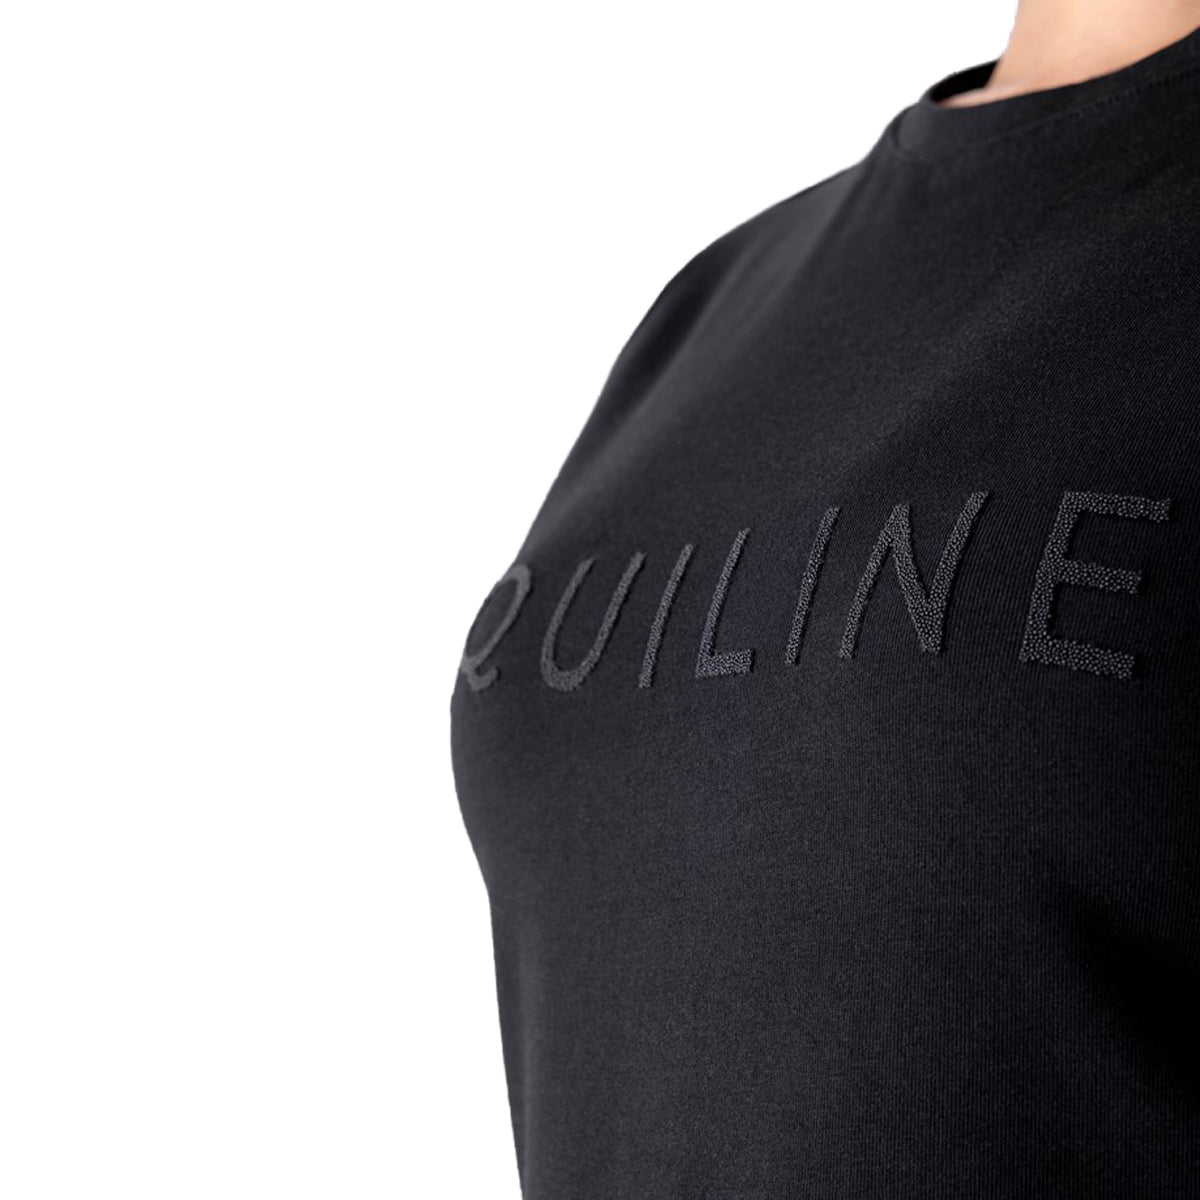 Equiline Women's Gusbig T-Shirt